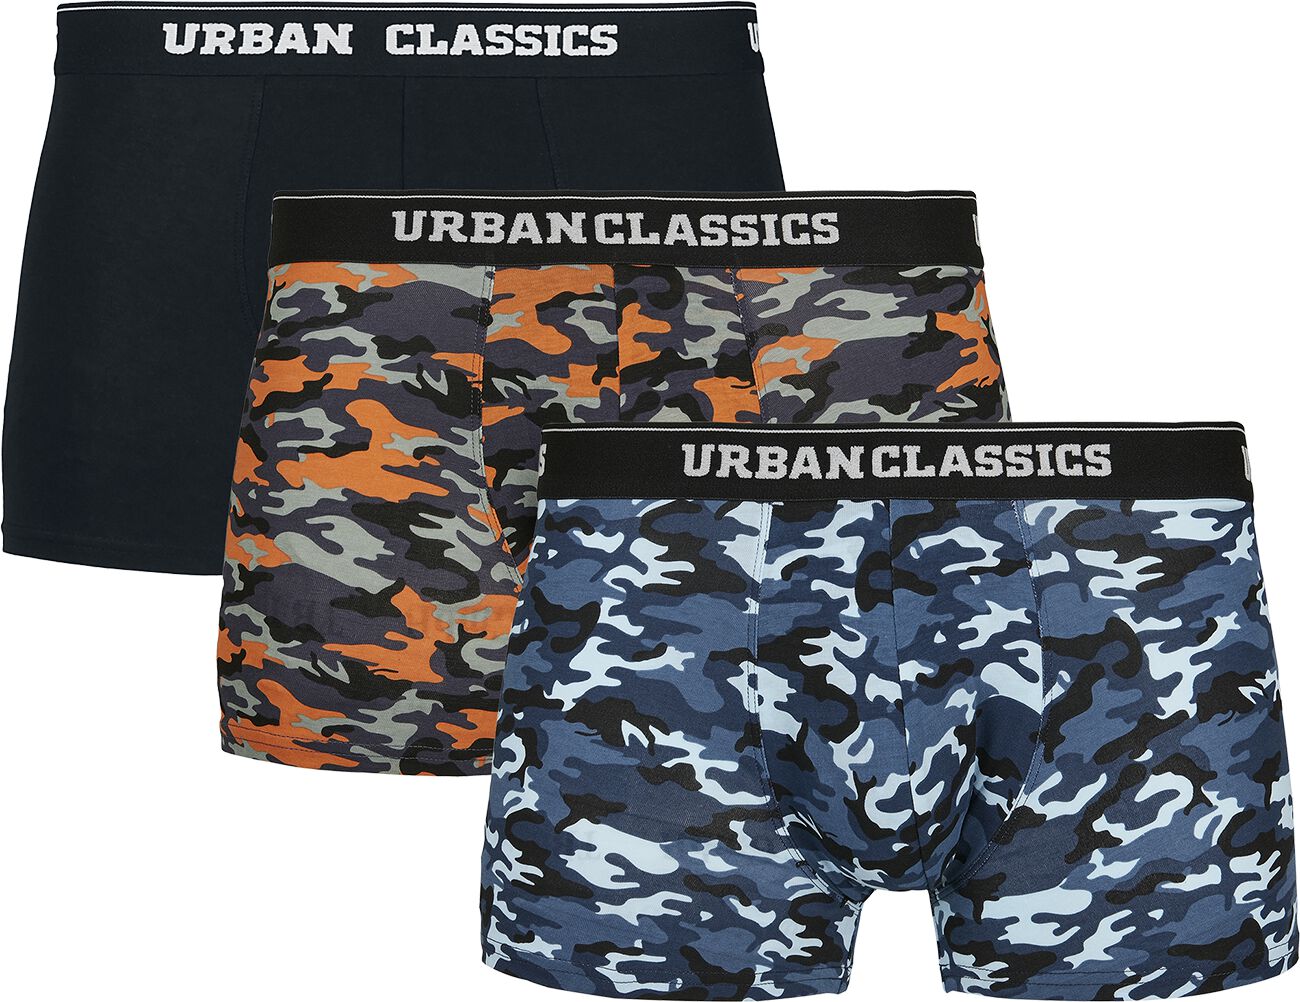 Urban Classics - Camouflage/Flecktarn Boxershort-Set - Boxer Short 3-Pack - S bis XL - für Männer - Größe S - schwarz/camouflage